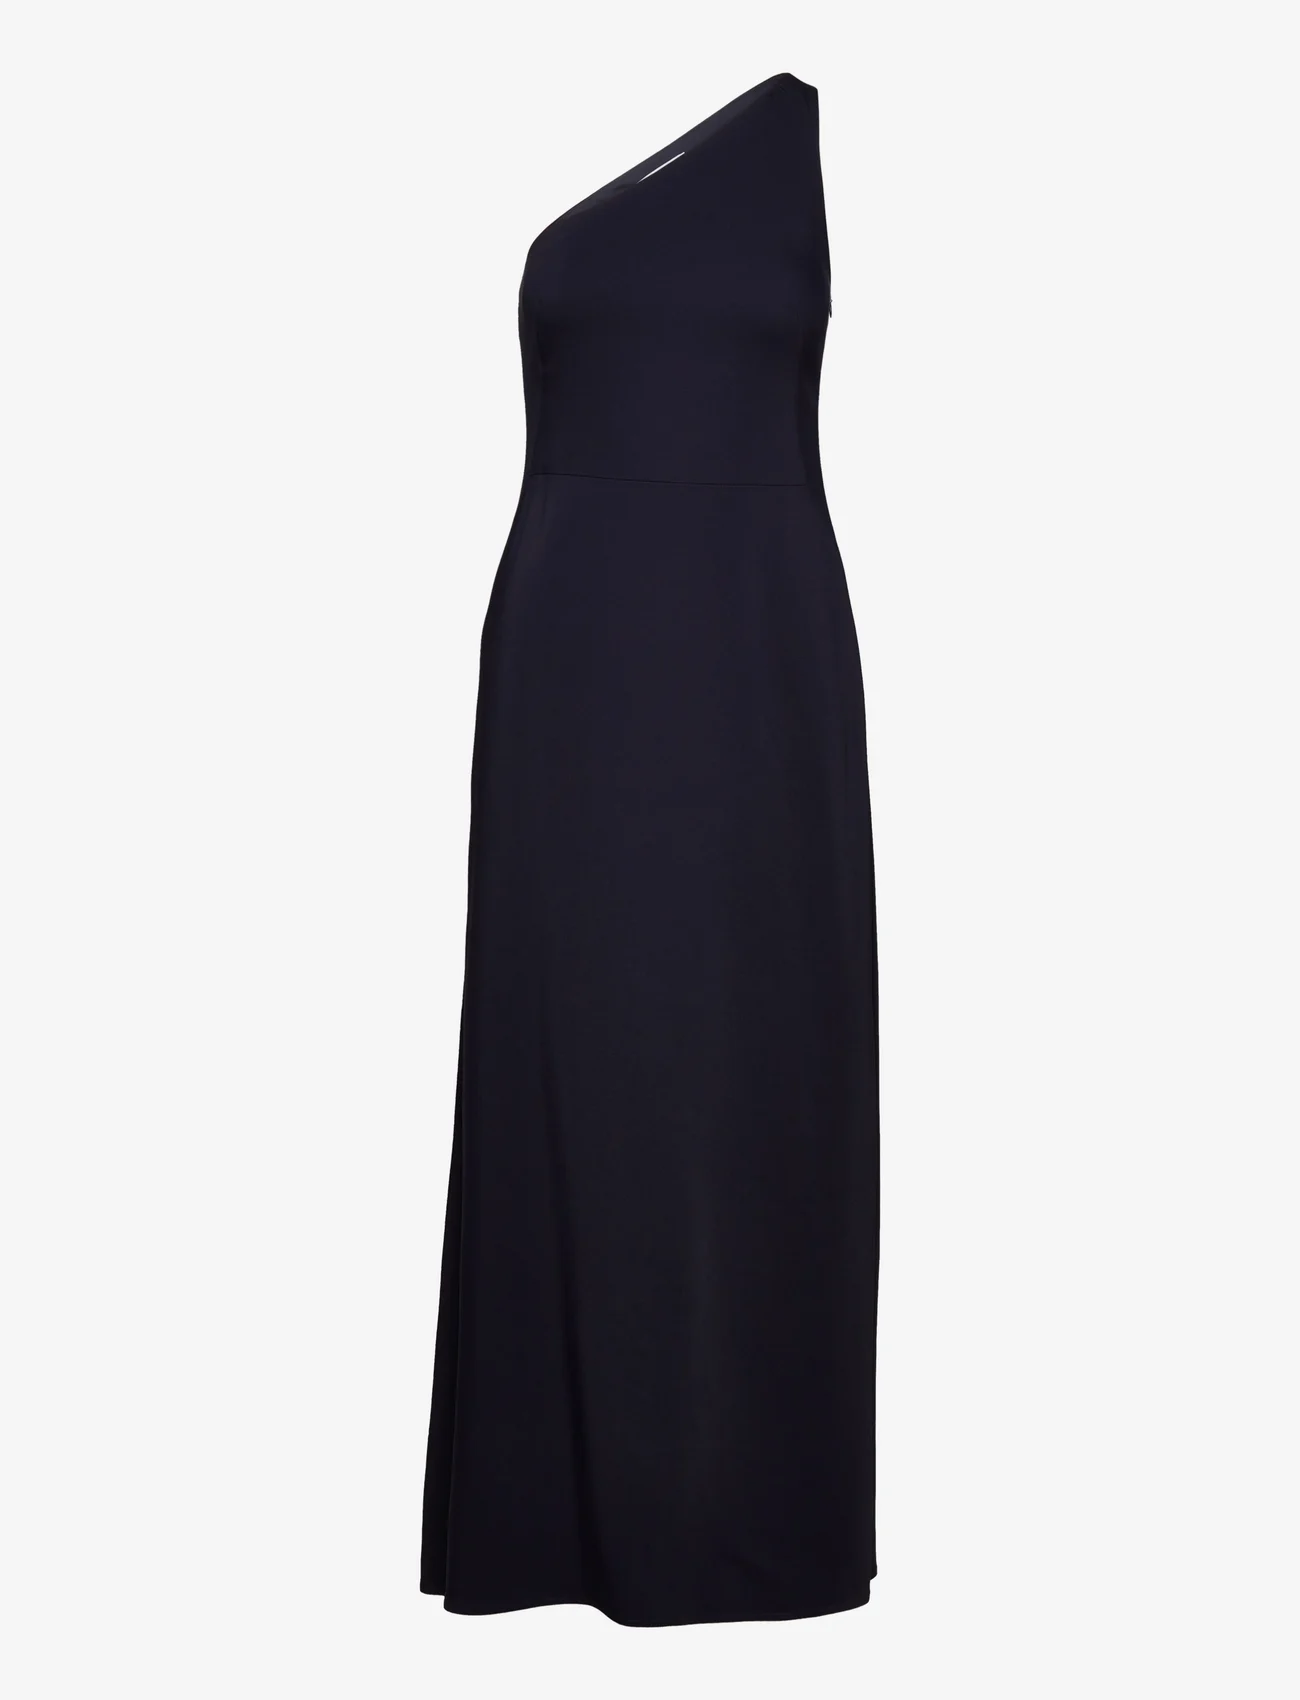 IVY OAK - One Shoulder Ankle Length Dress - feestelijke kleding voor outlet-prijzen - navy blue - 0